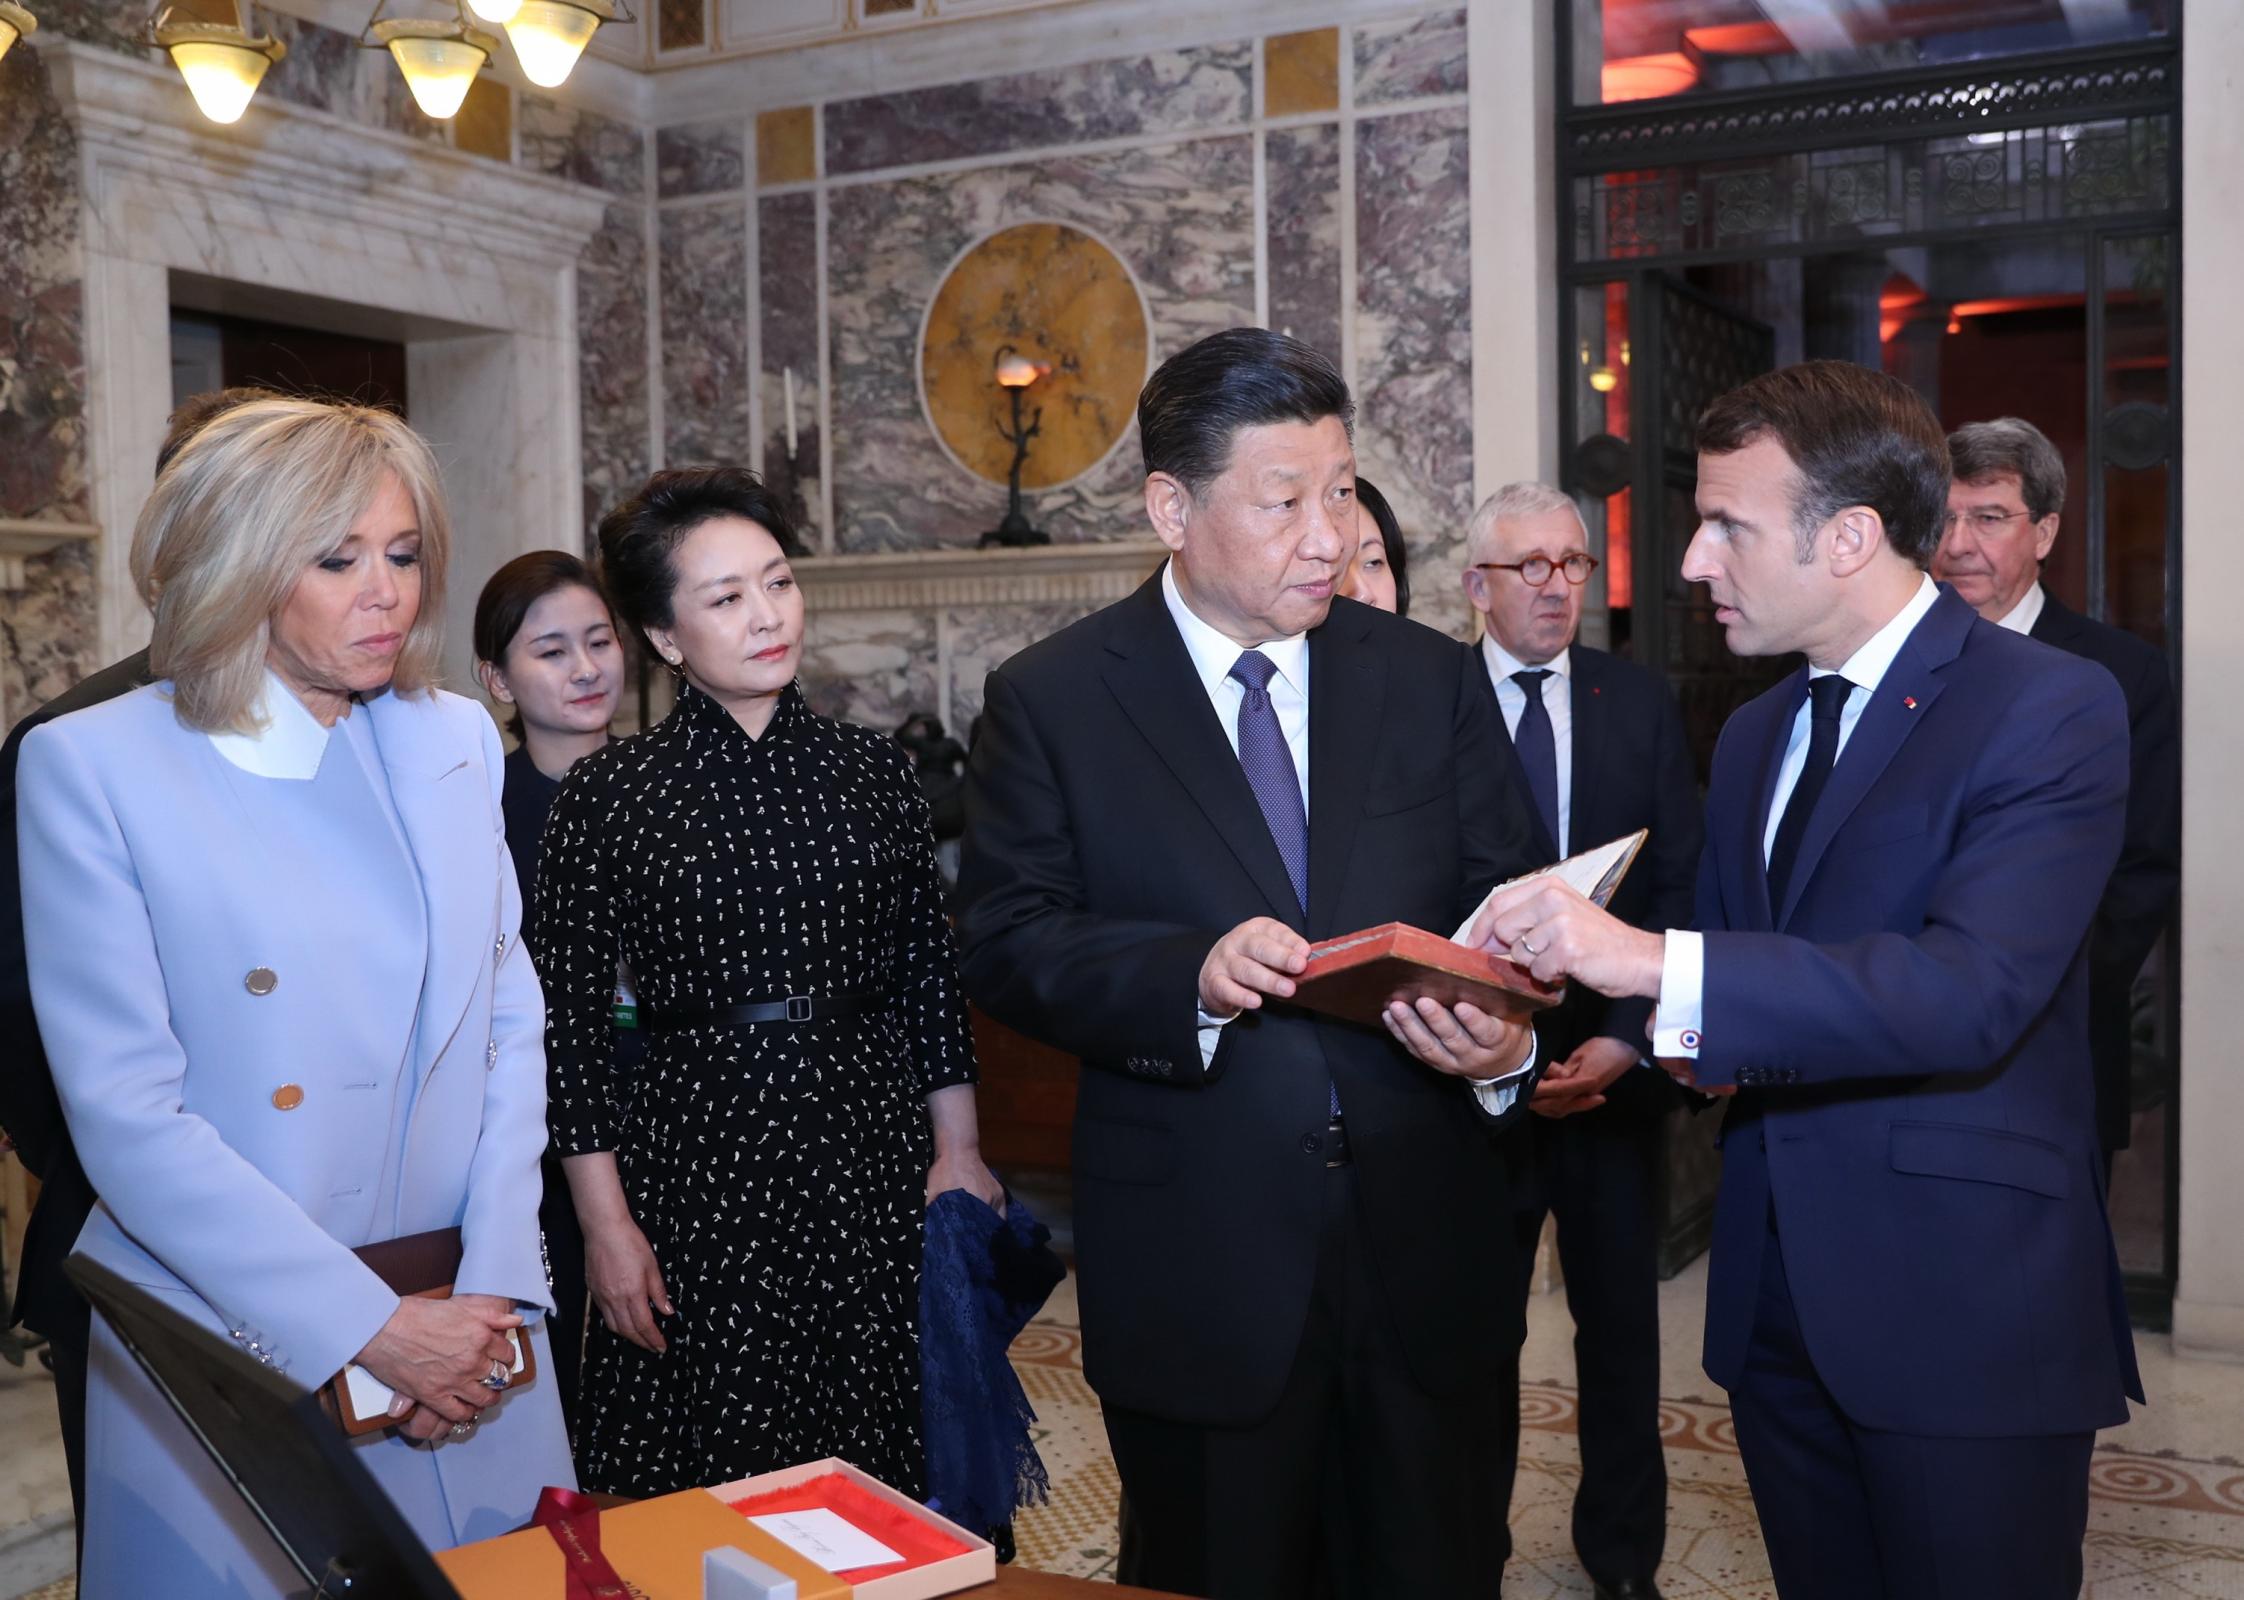 Kitajski predsednik Ši Džinping (drugi z desne) od svojega francoskega kolega Emmanuela Macrona (prvi z desne) prejema izvirno francosko različico knjige "Konfucij ali znanost princev", izdano leta 1688, kot nacionalno darilo pred njunim srečanjem v Nici v Franciji 24. marca 2019. (Xinhua/Ju Peng)